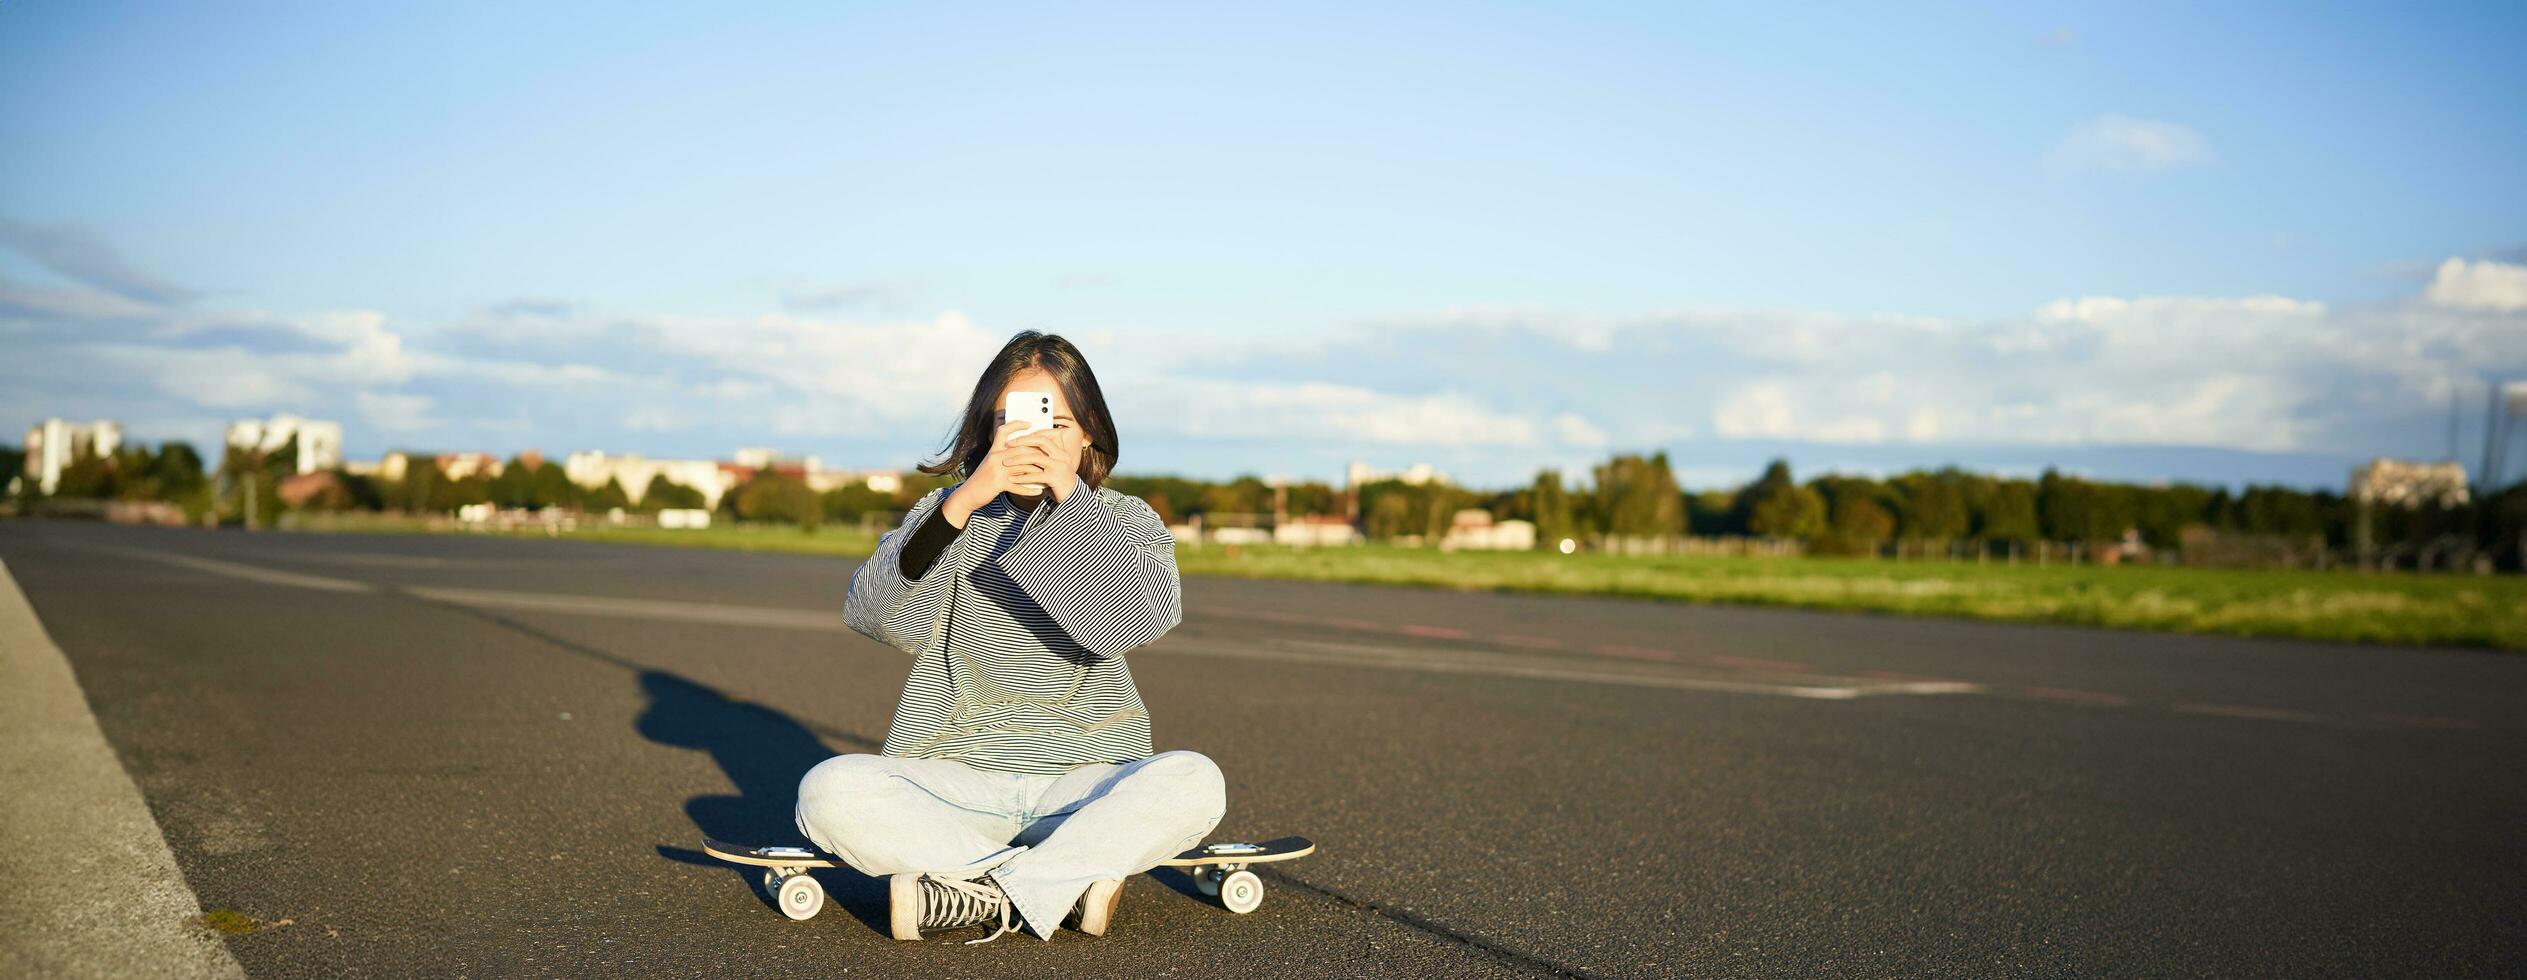 hipster adolescente menina sentado em dela skate, levando fotos em Smartphone. ásia mulher skatista senta em Longboard e fotografando em Móvel telefone